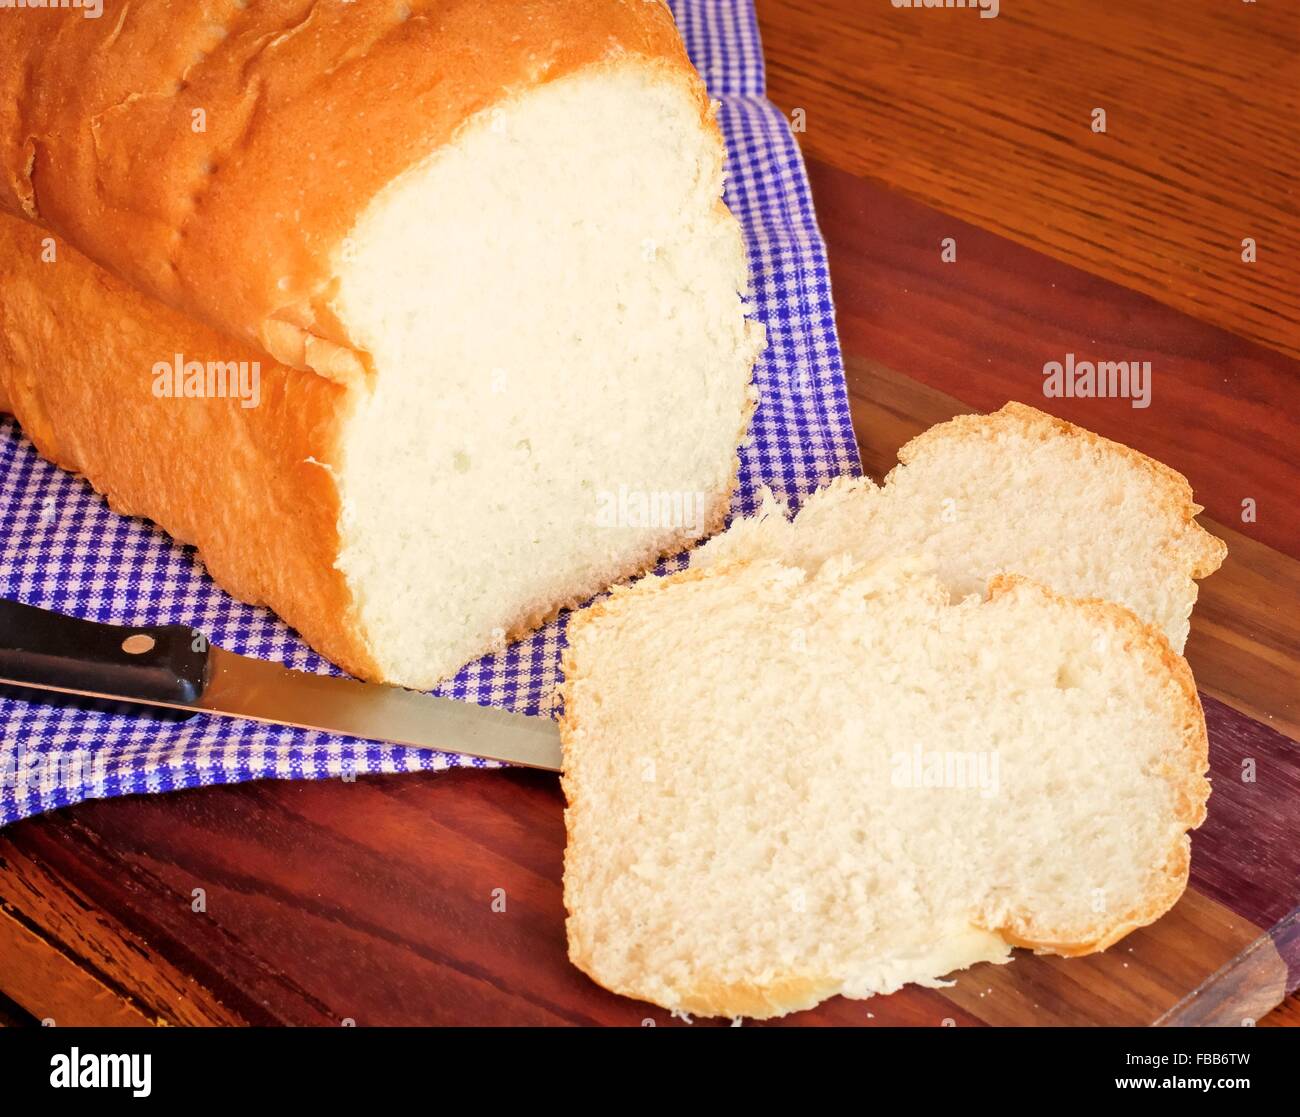 Barra de pan. Recién salido del horno caliente rebanada de pan casero en un fondo rústico. Foto de stock